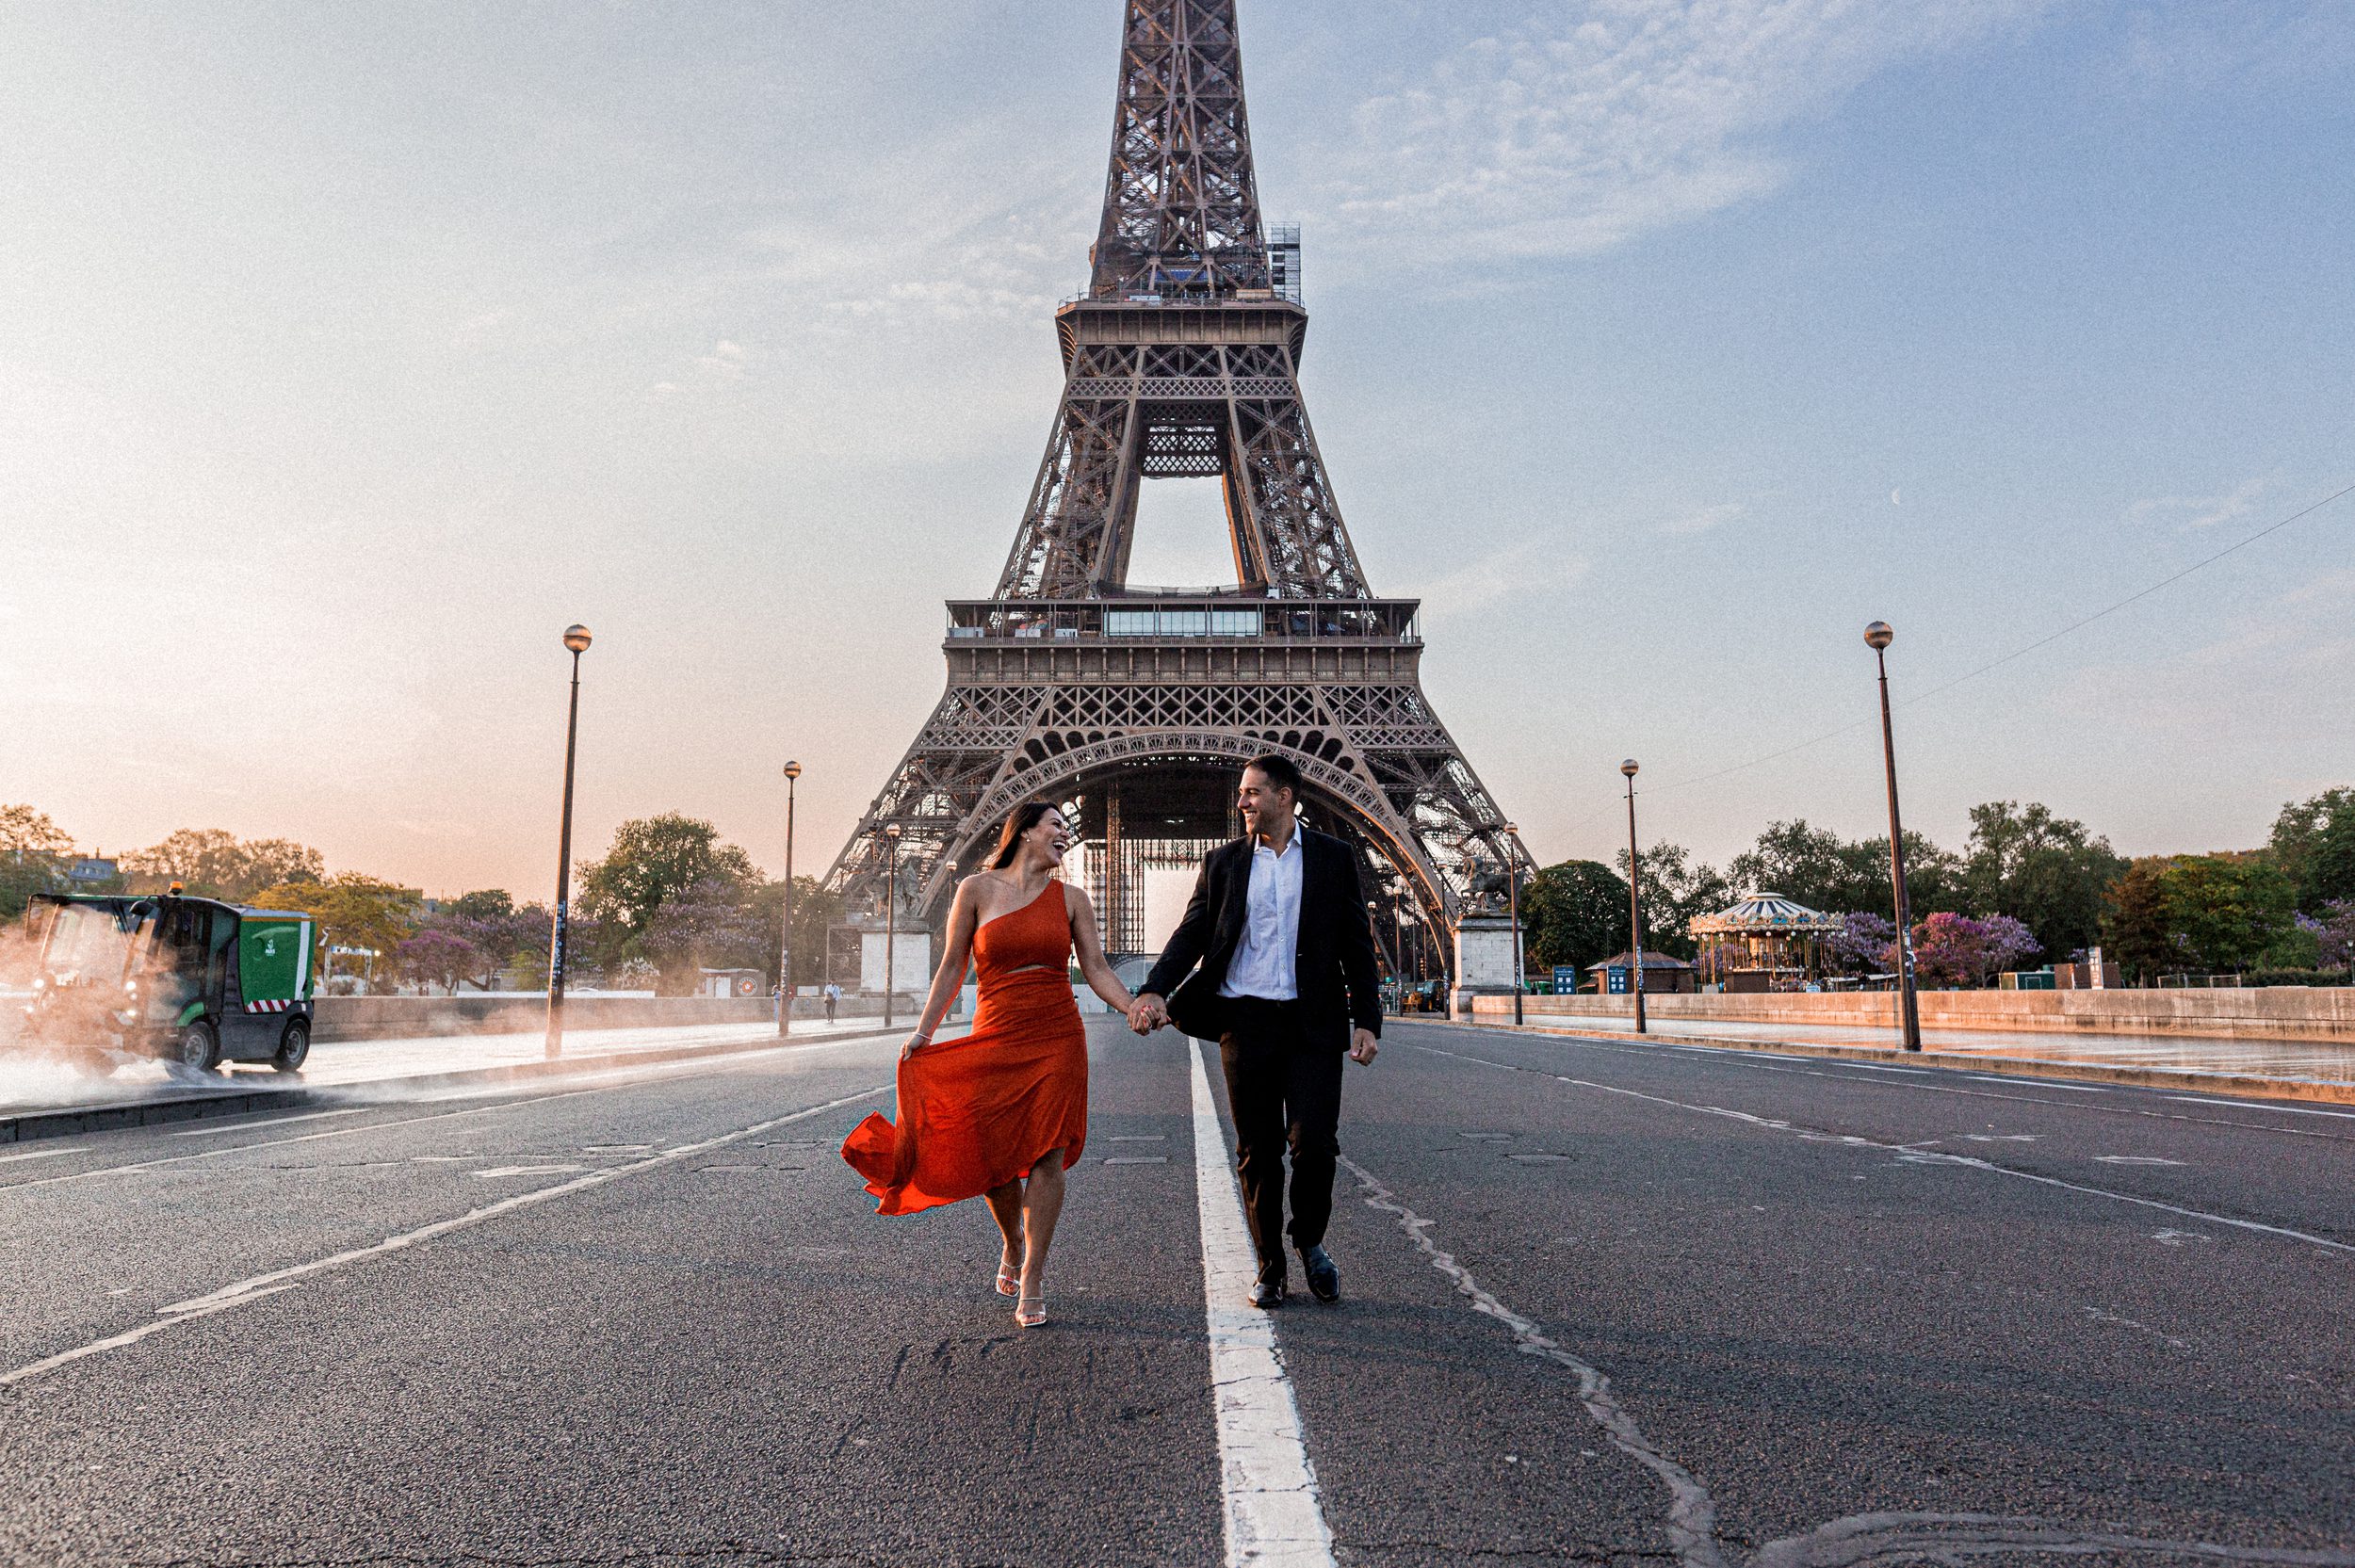 Fotoshooting Paris. Paarshooting am frühen Morgen auf leerer Straße vor dem Eiffelturm.